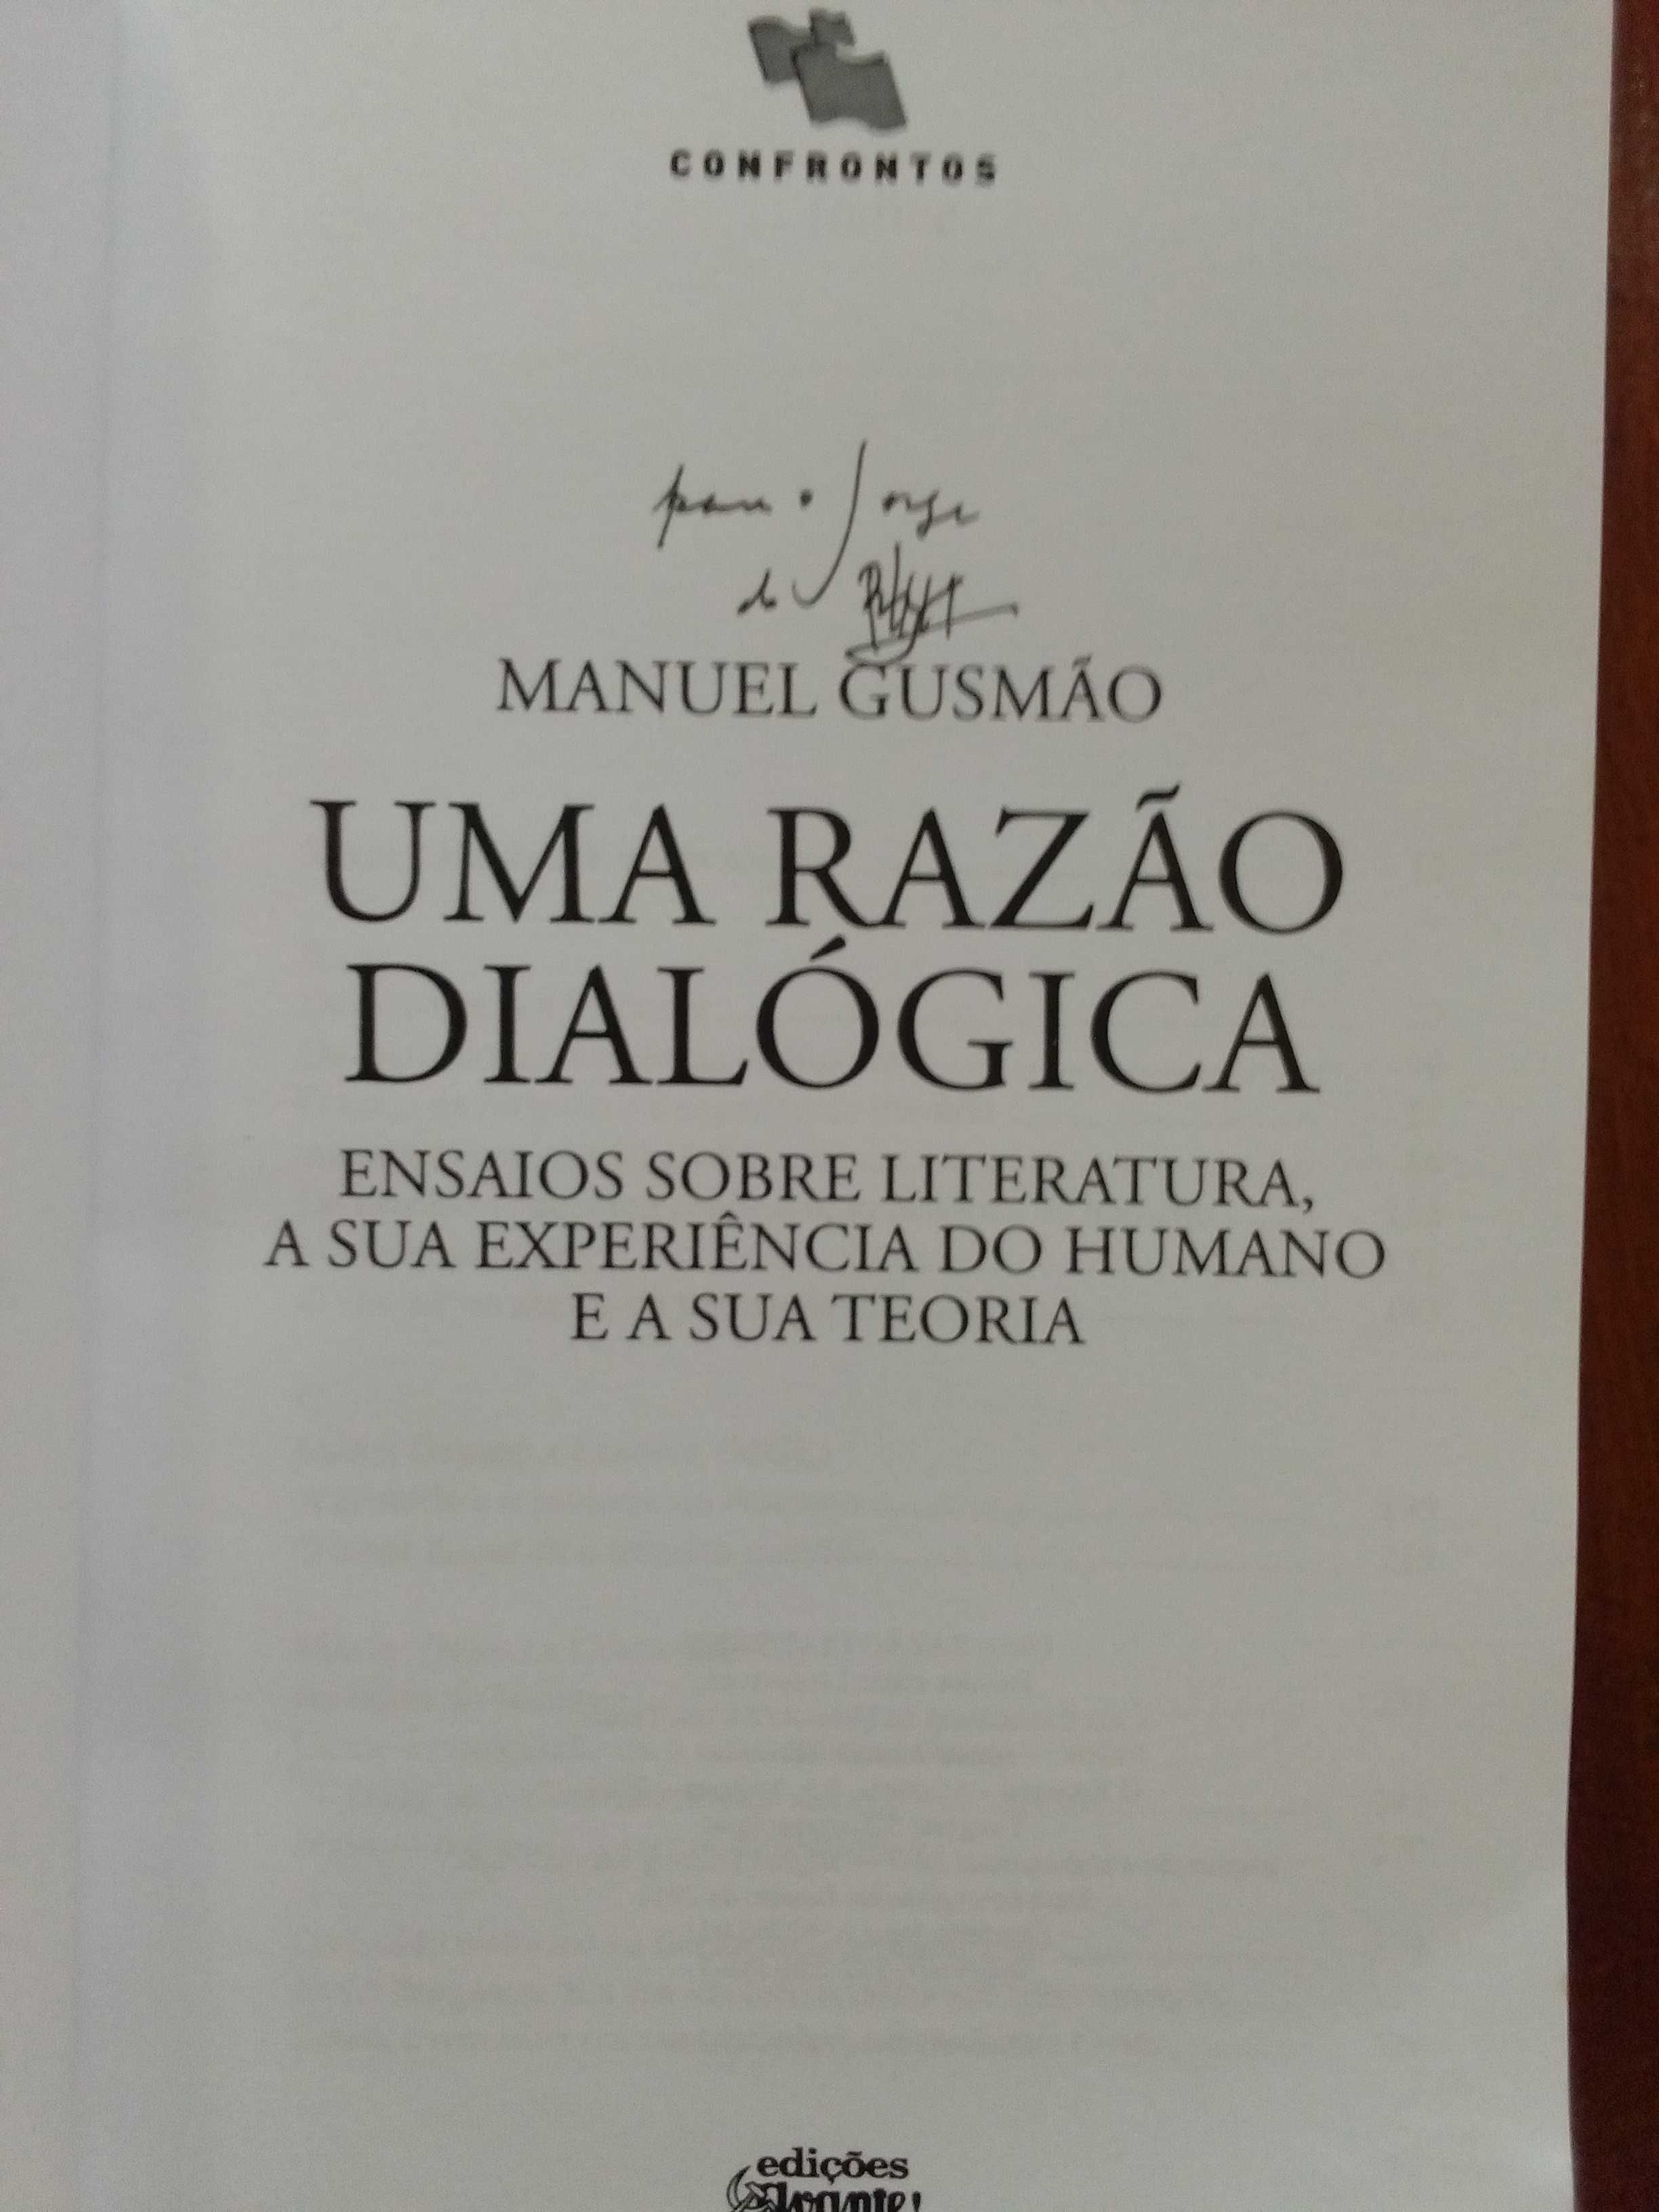 Manuel Gusmão - Uma razão dialógica